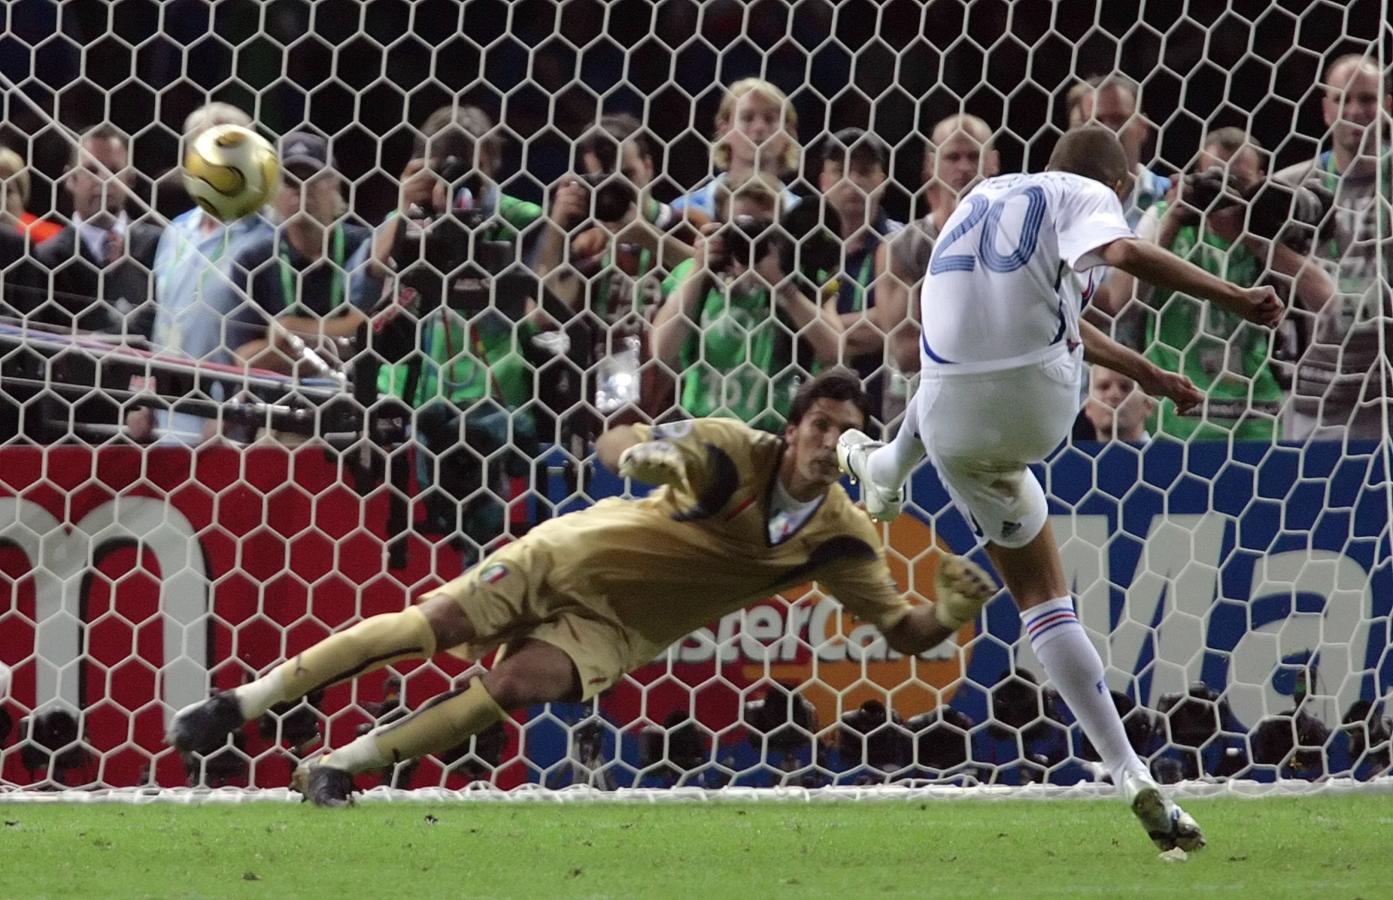 Imagen El penal fallado por David Trezeguet en la final del Mundial 2006.